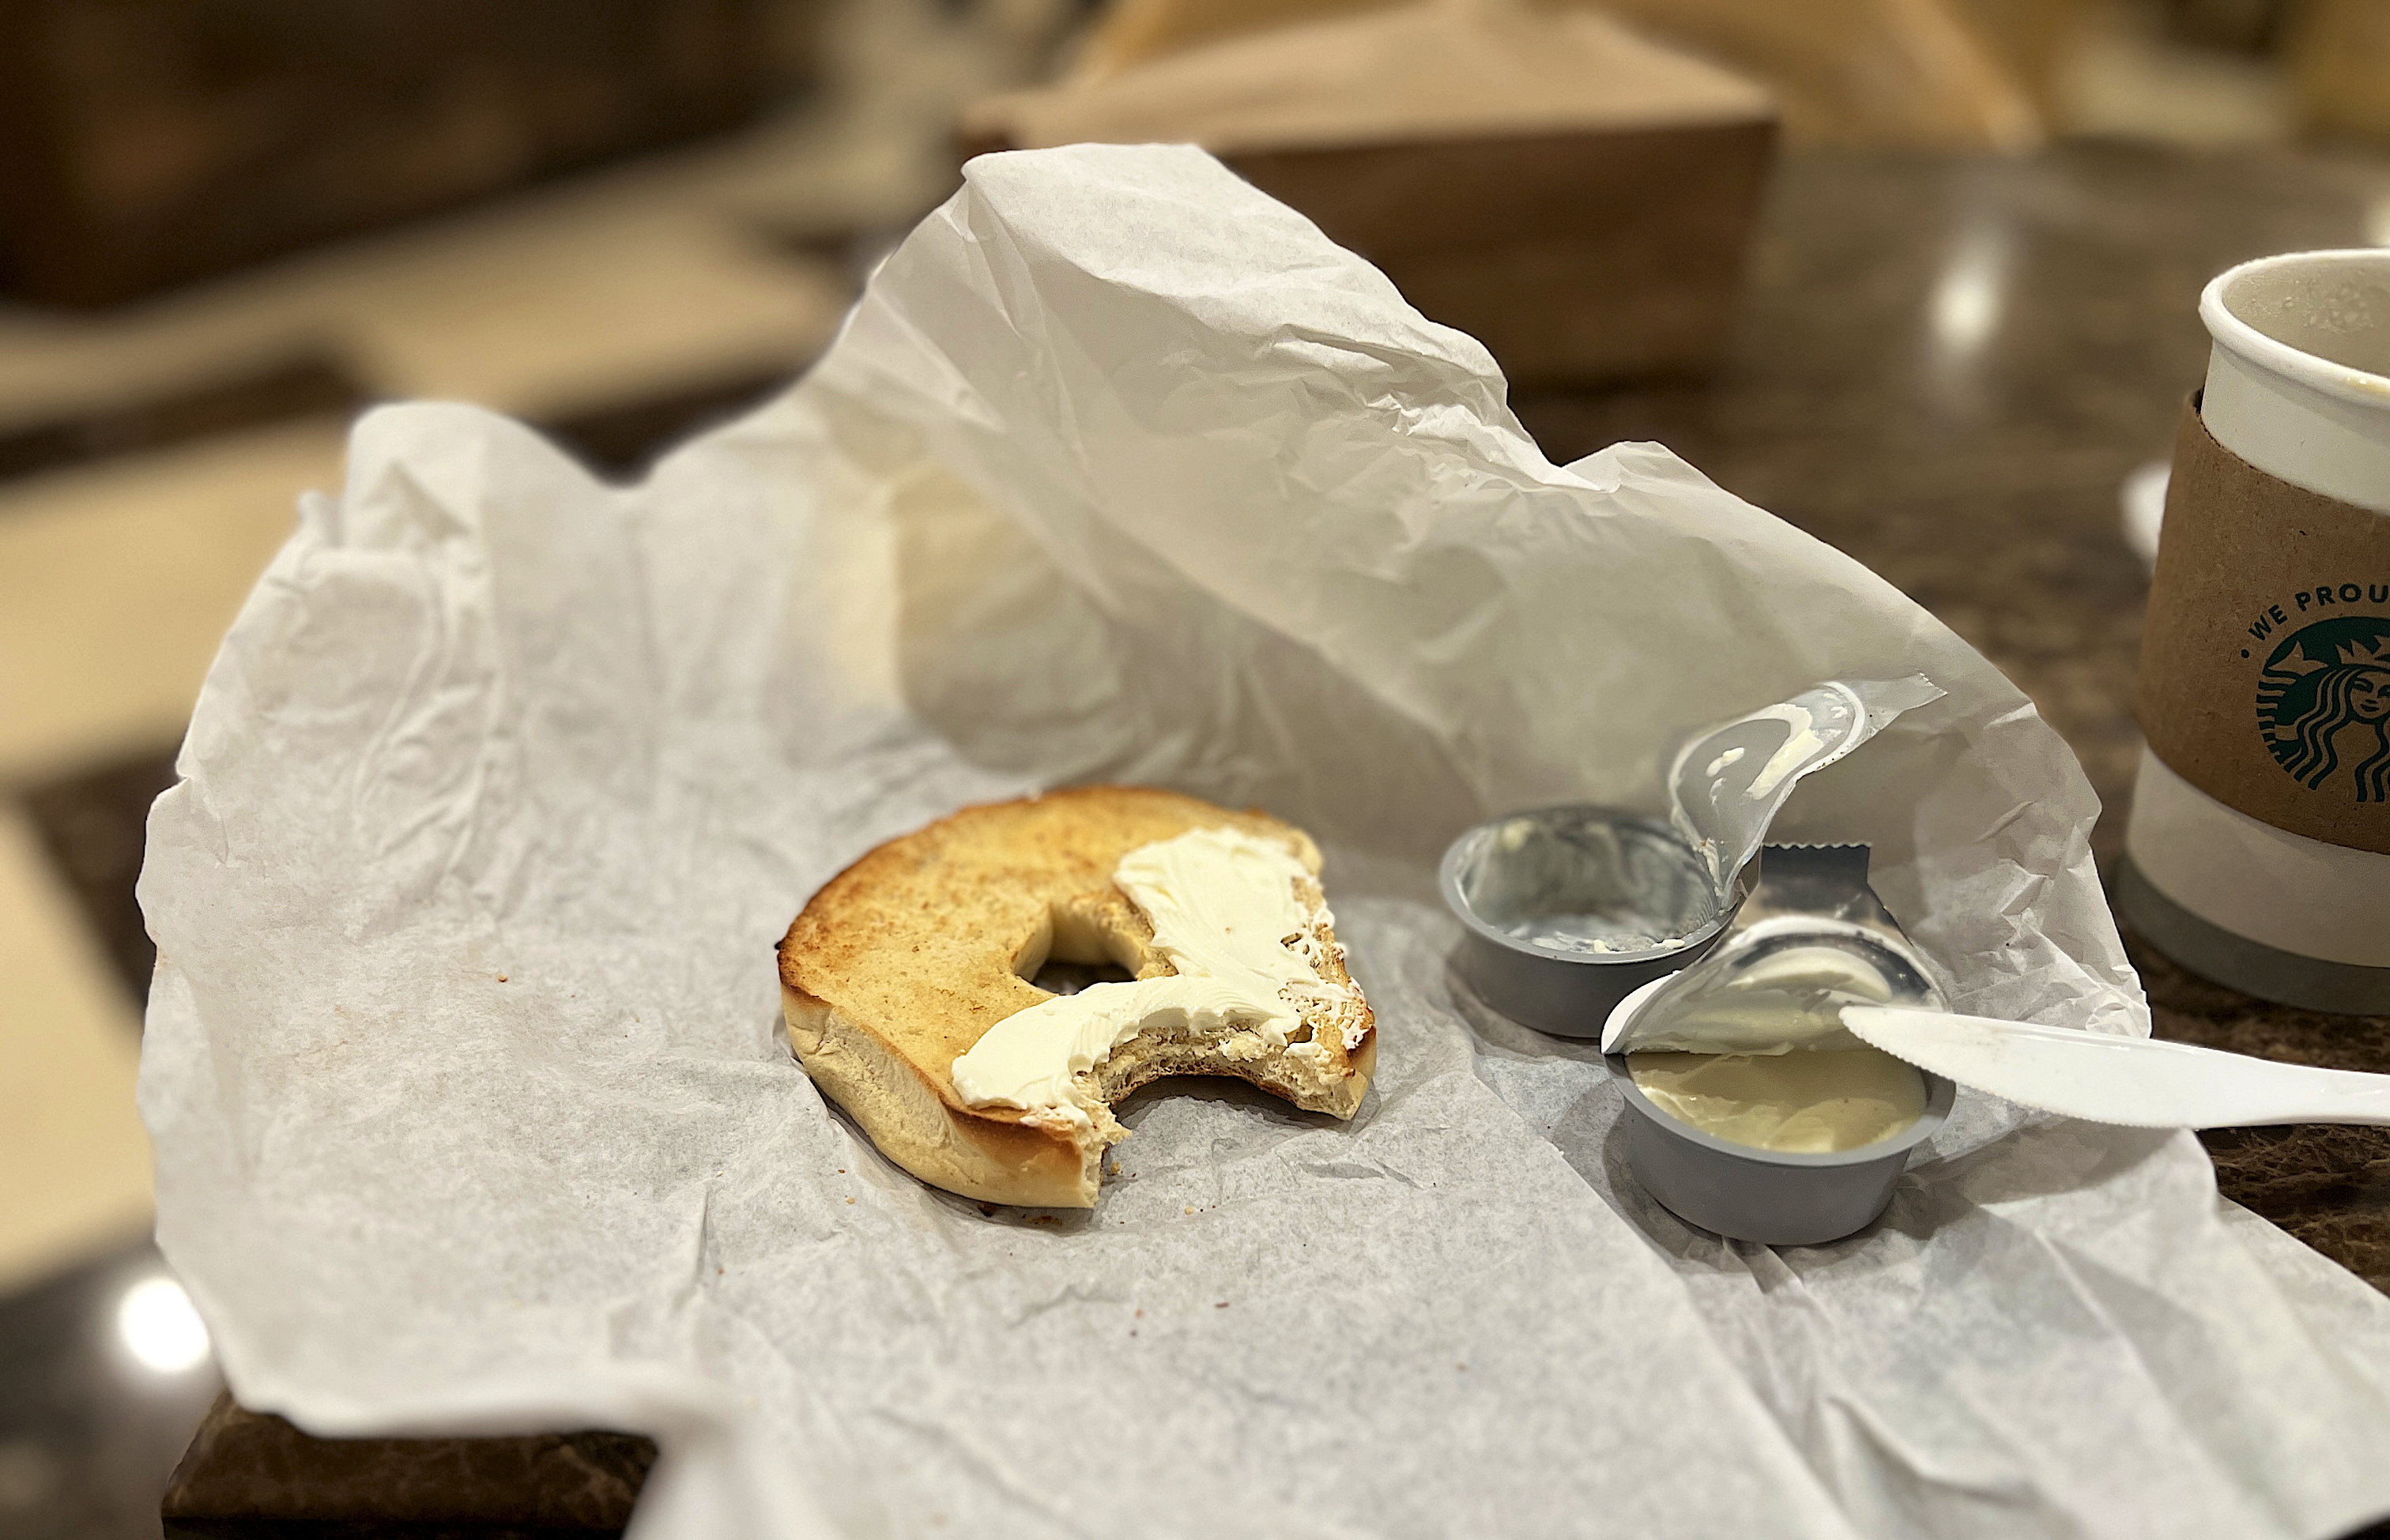 Auf dem Einwickelpapier liegt ein angebissener, getoasteter Bagel mit Cream Cheese. Daneben die leeren Cream Cheese Döschen.